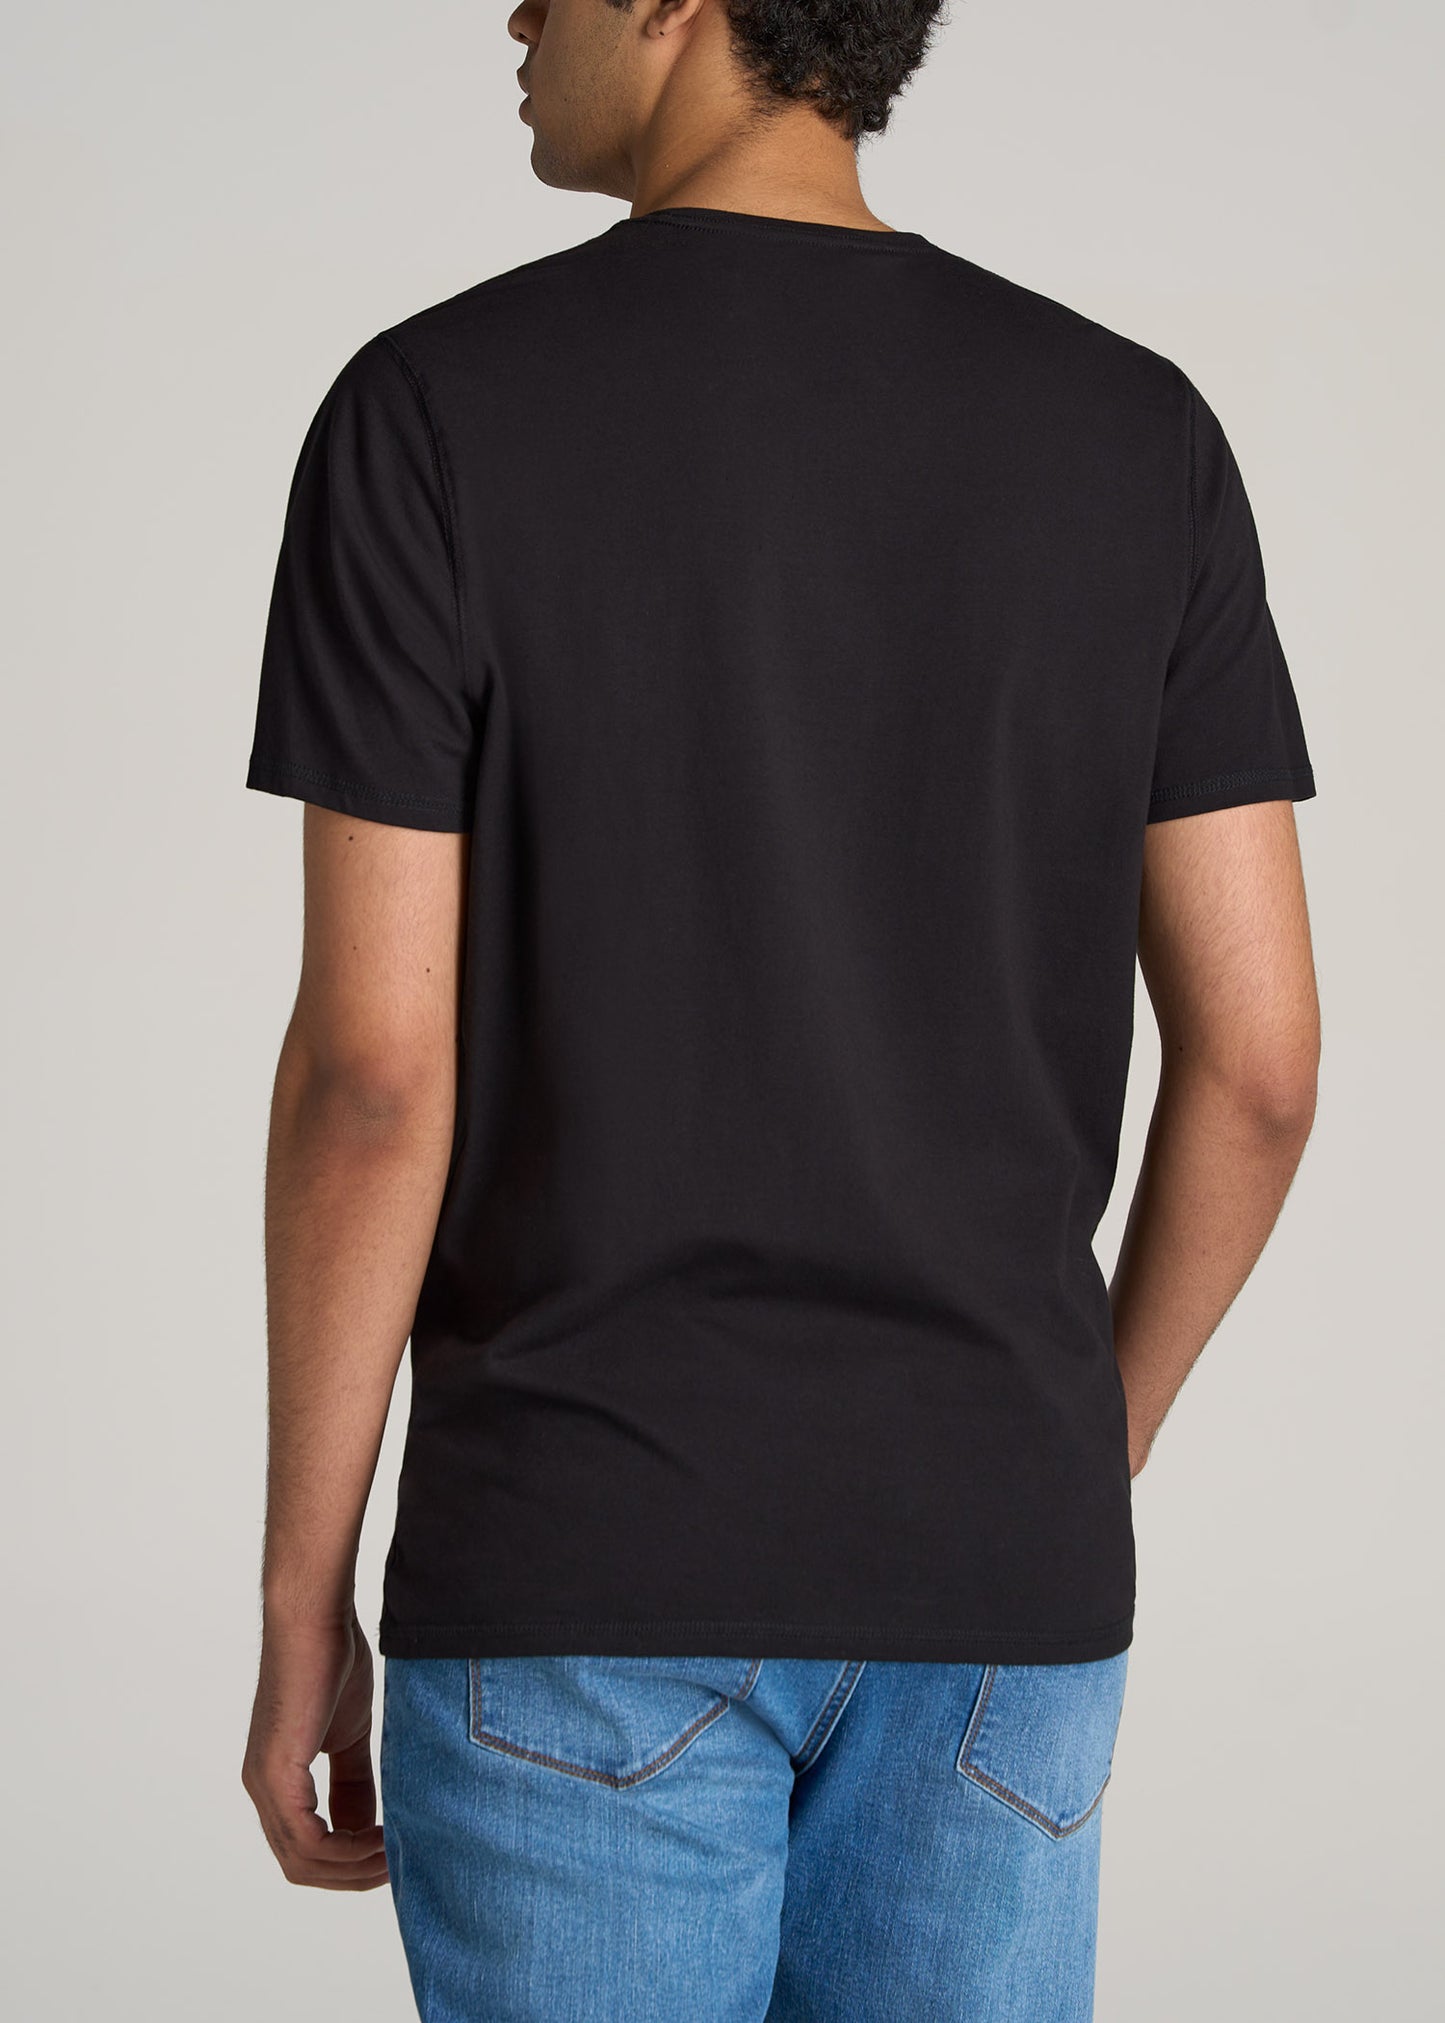 American-Tall-Men-Essentials-REGULAR-FIT-Crew-Neck-T-Shirt-Black-back